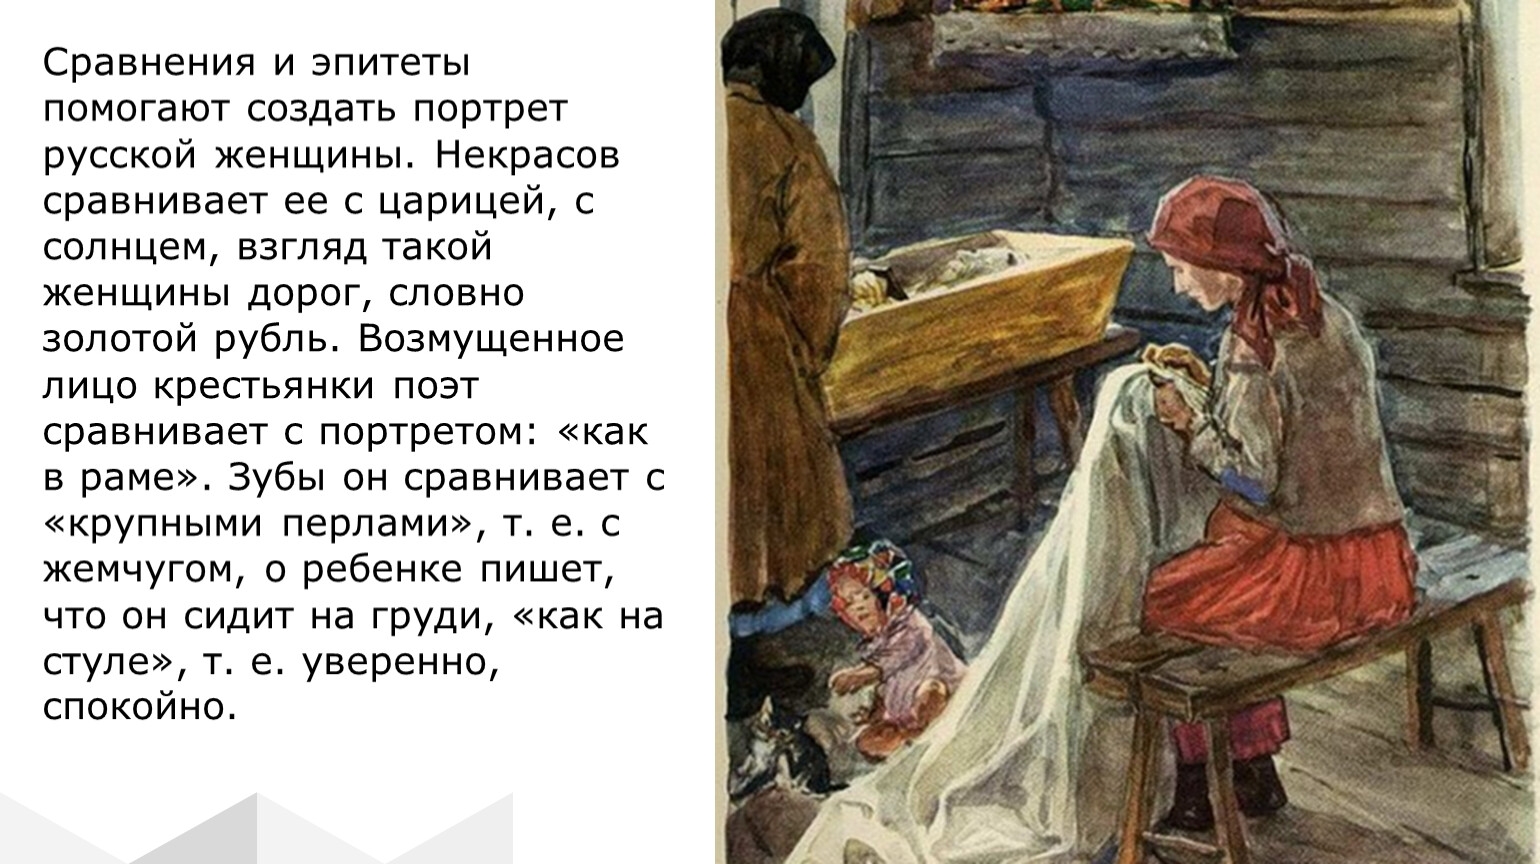 Эпитеты русской женщины в Мороз красный нос